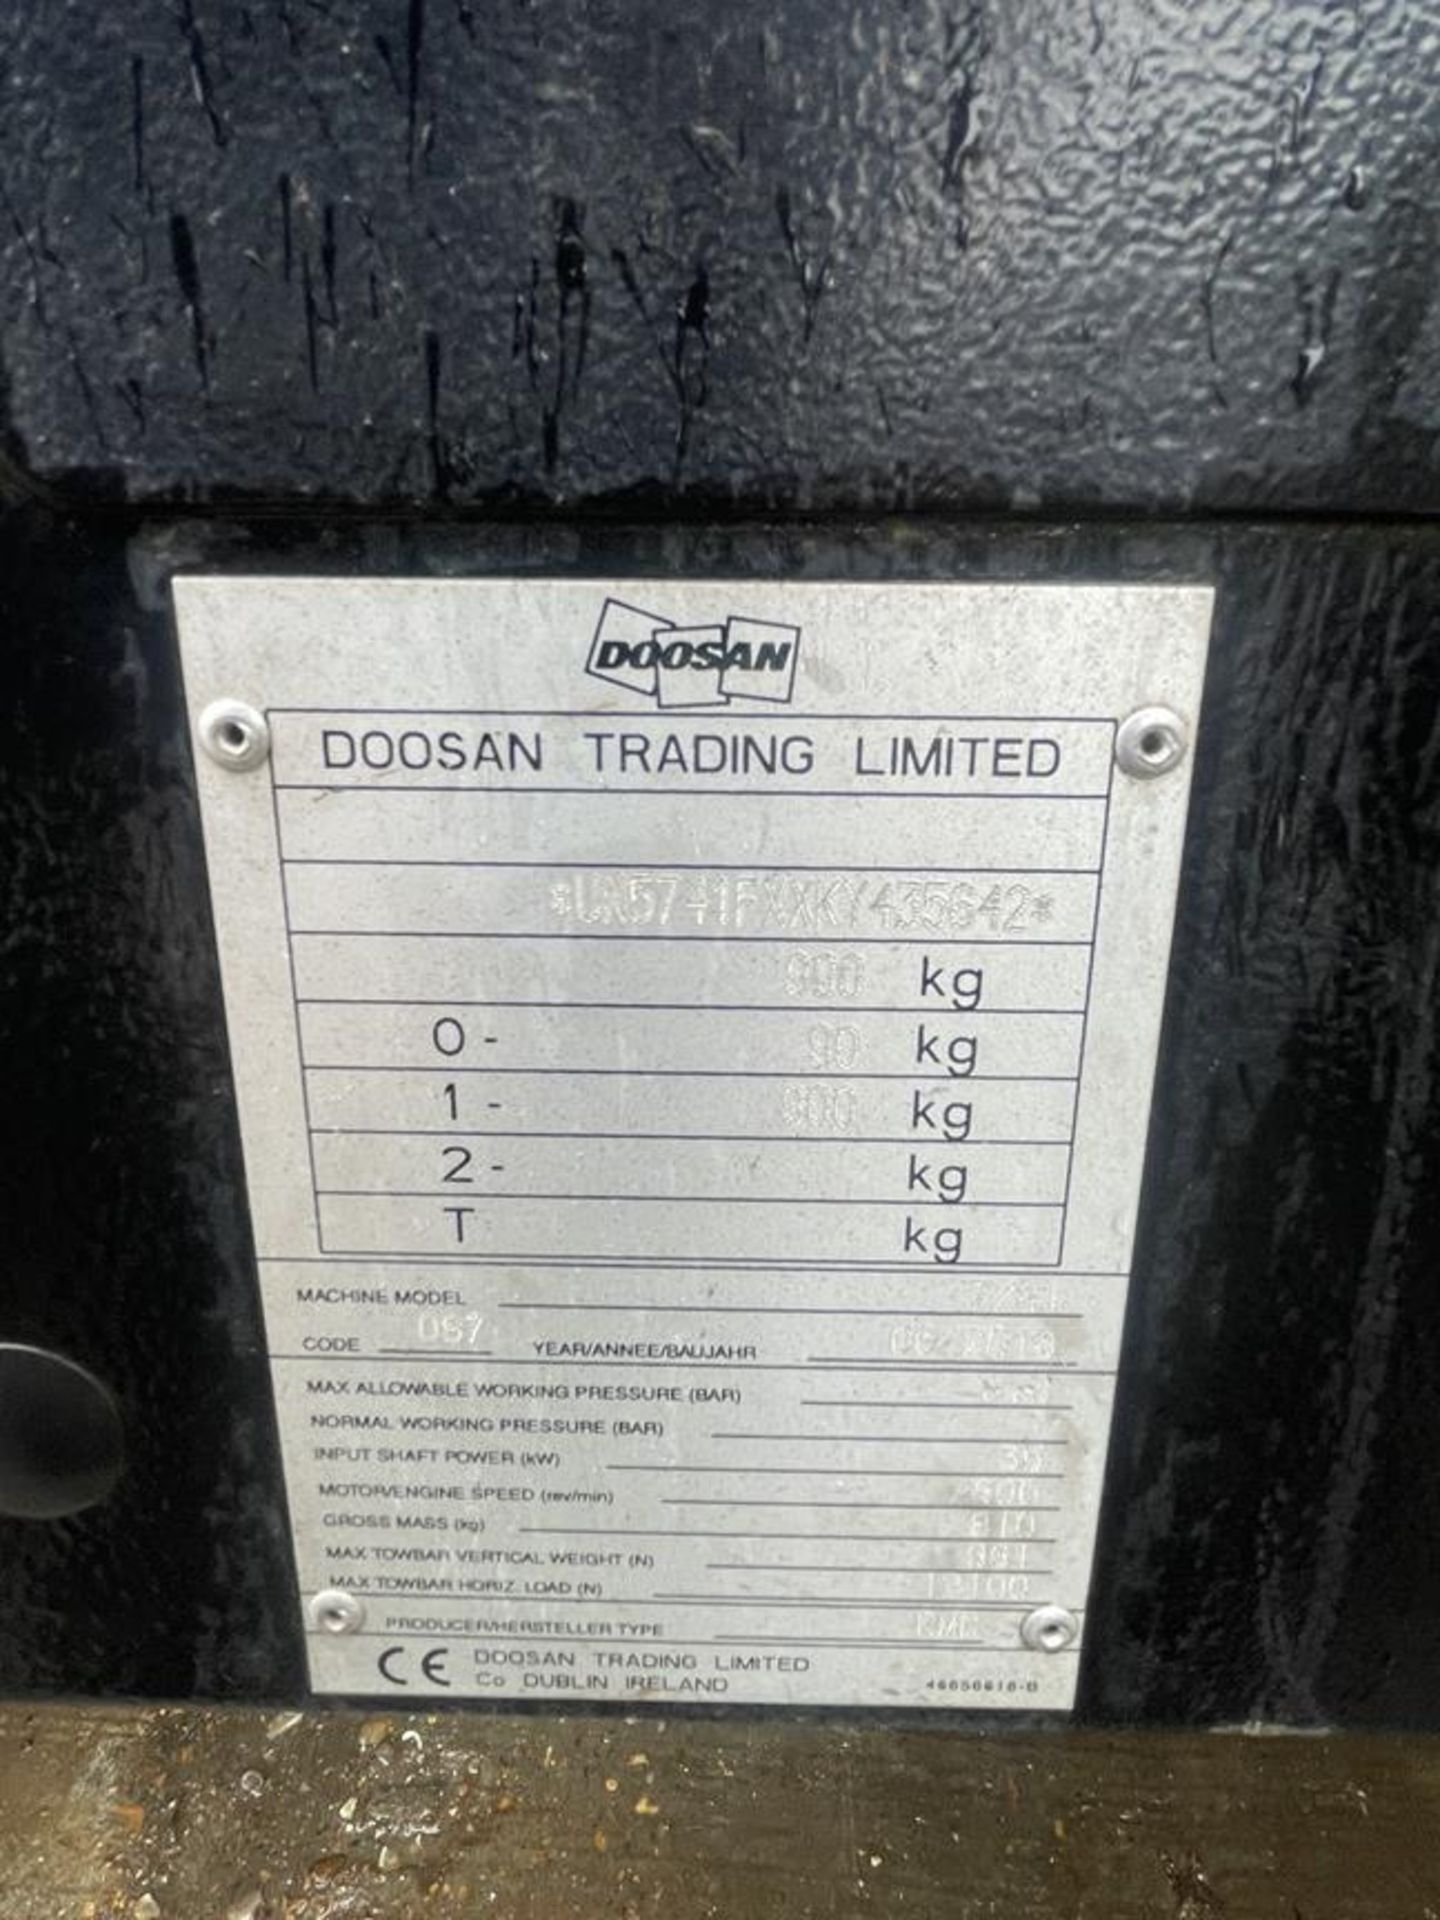 Doosan Model 7/41 Towable 7-Bar Air Compressor S/No. UN5741FXXKY435642, Run Hours: 207.1 - Image 6 of 7